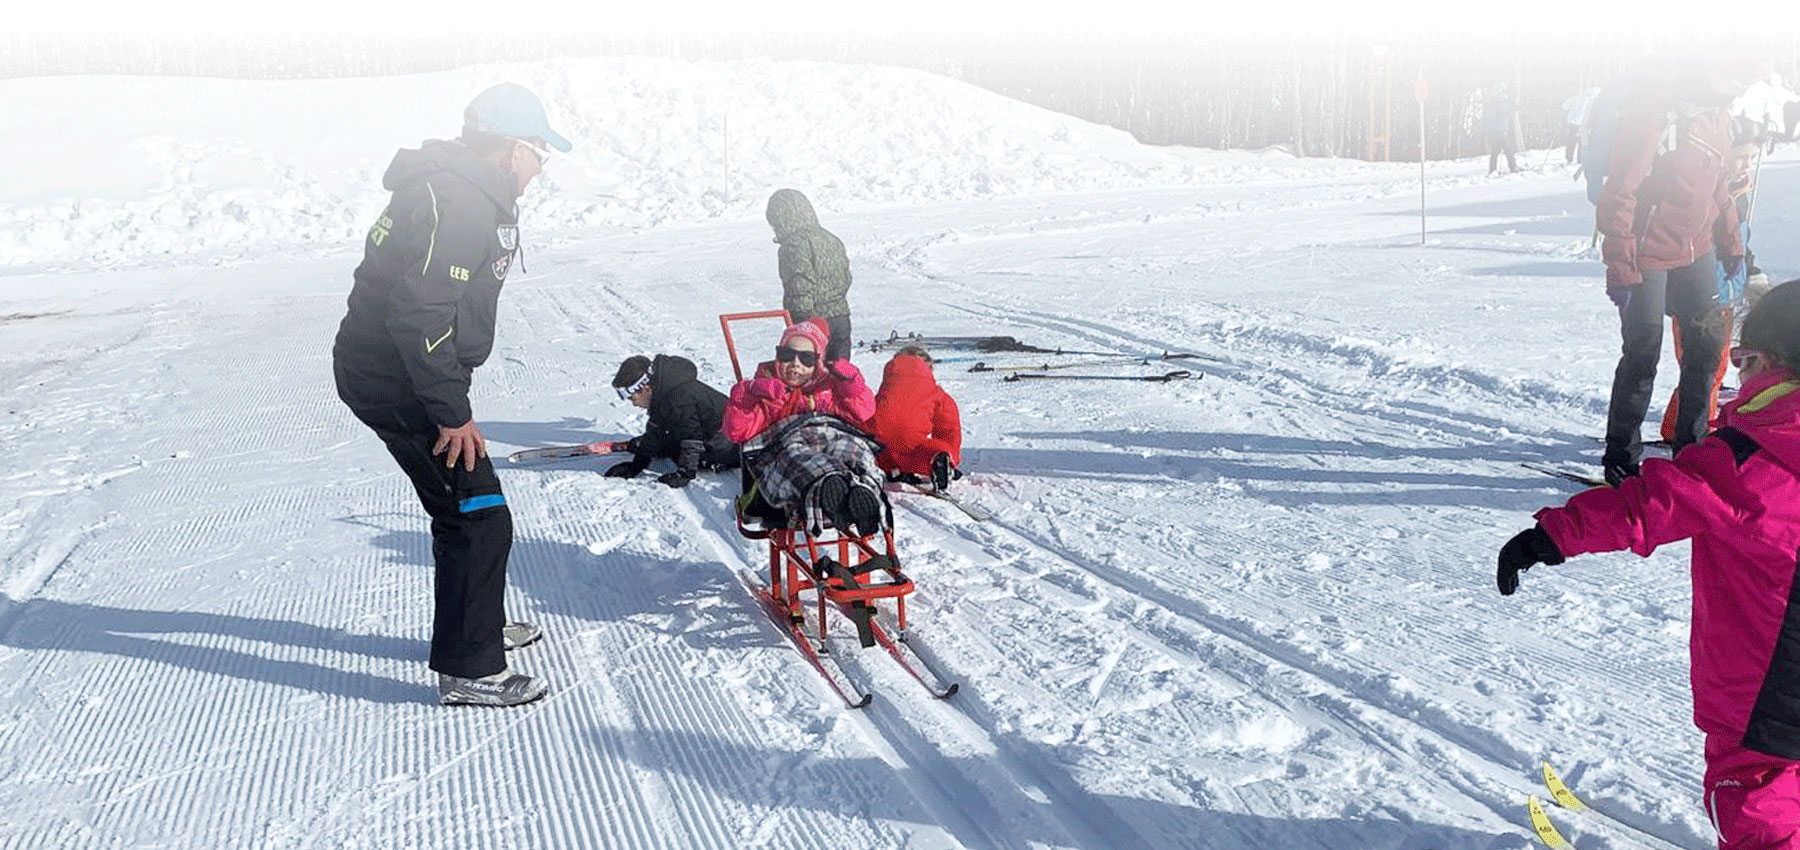 Escuela de Esquí Nórdico Somport ofrece la posibilidad de disfrutar del esquí y los deportes nórdicos también a personas con diversas discapacidades (ya sea auditiva, visual, intelectual o personas con movilidad reducida). Esquí adaptado y accesible para todos.